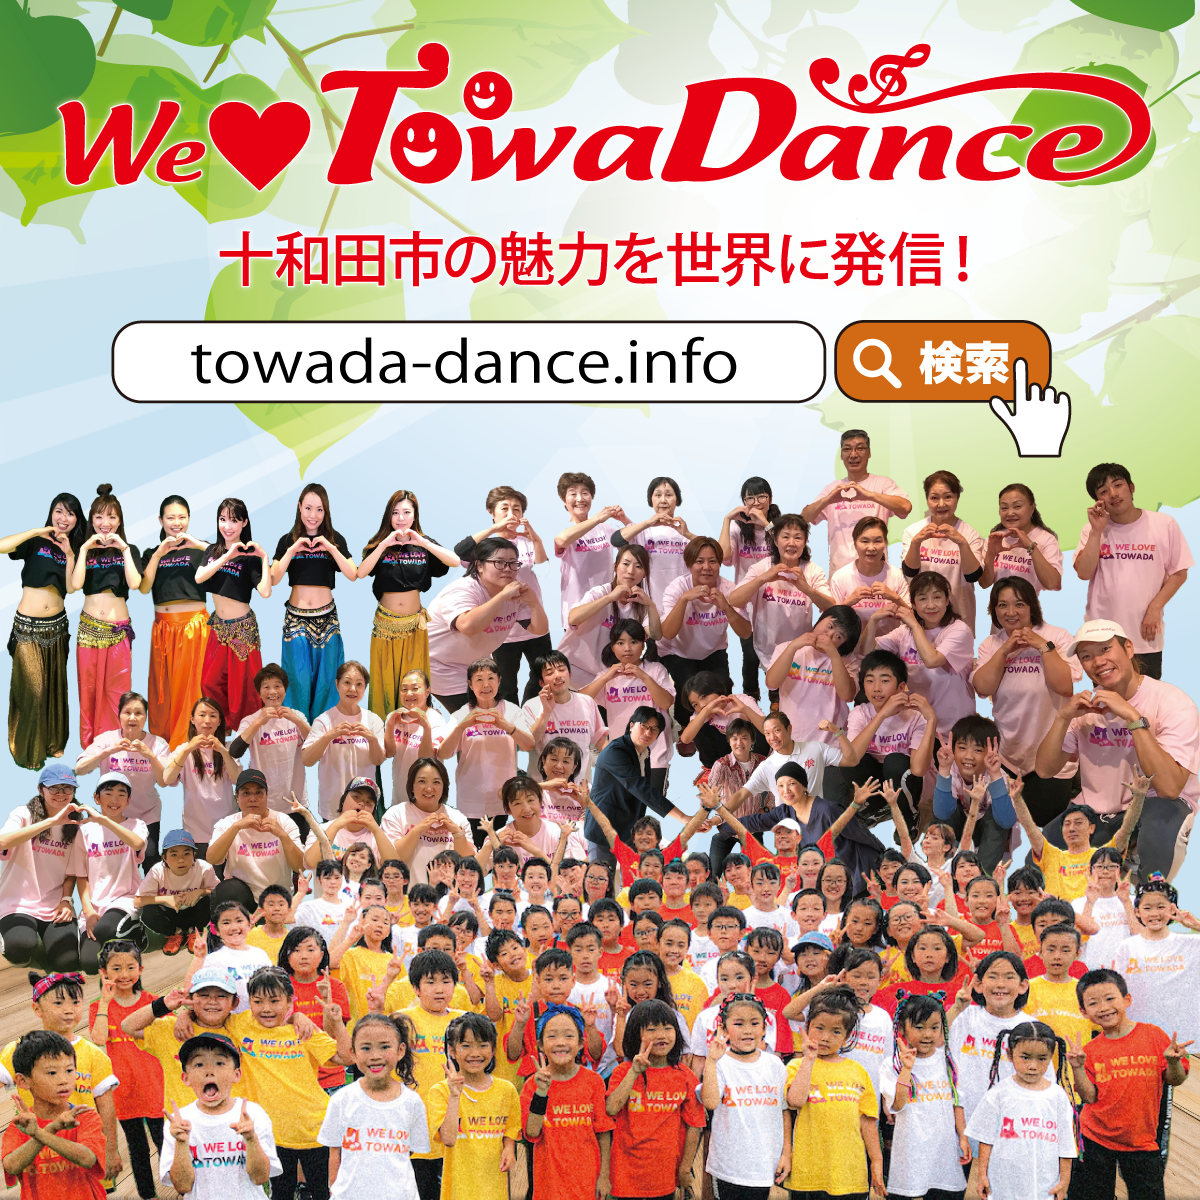 WE LOVE TOWADANCE トワダンス